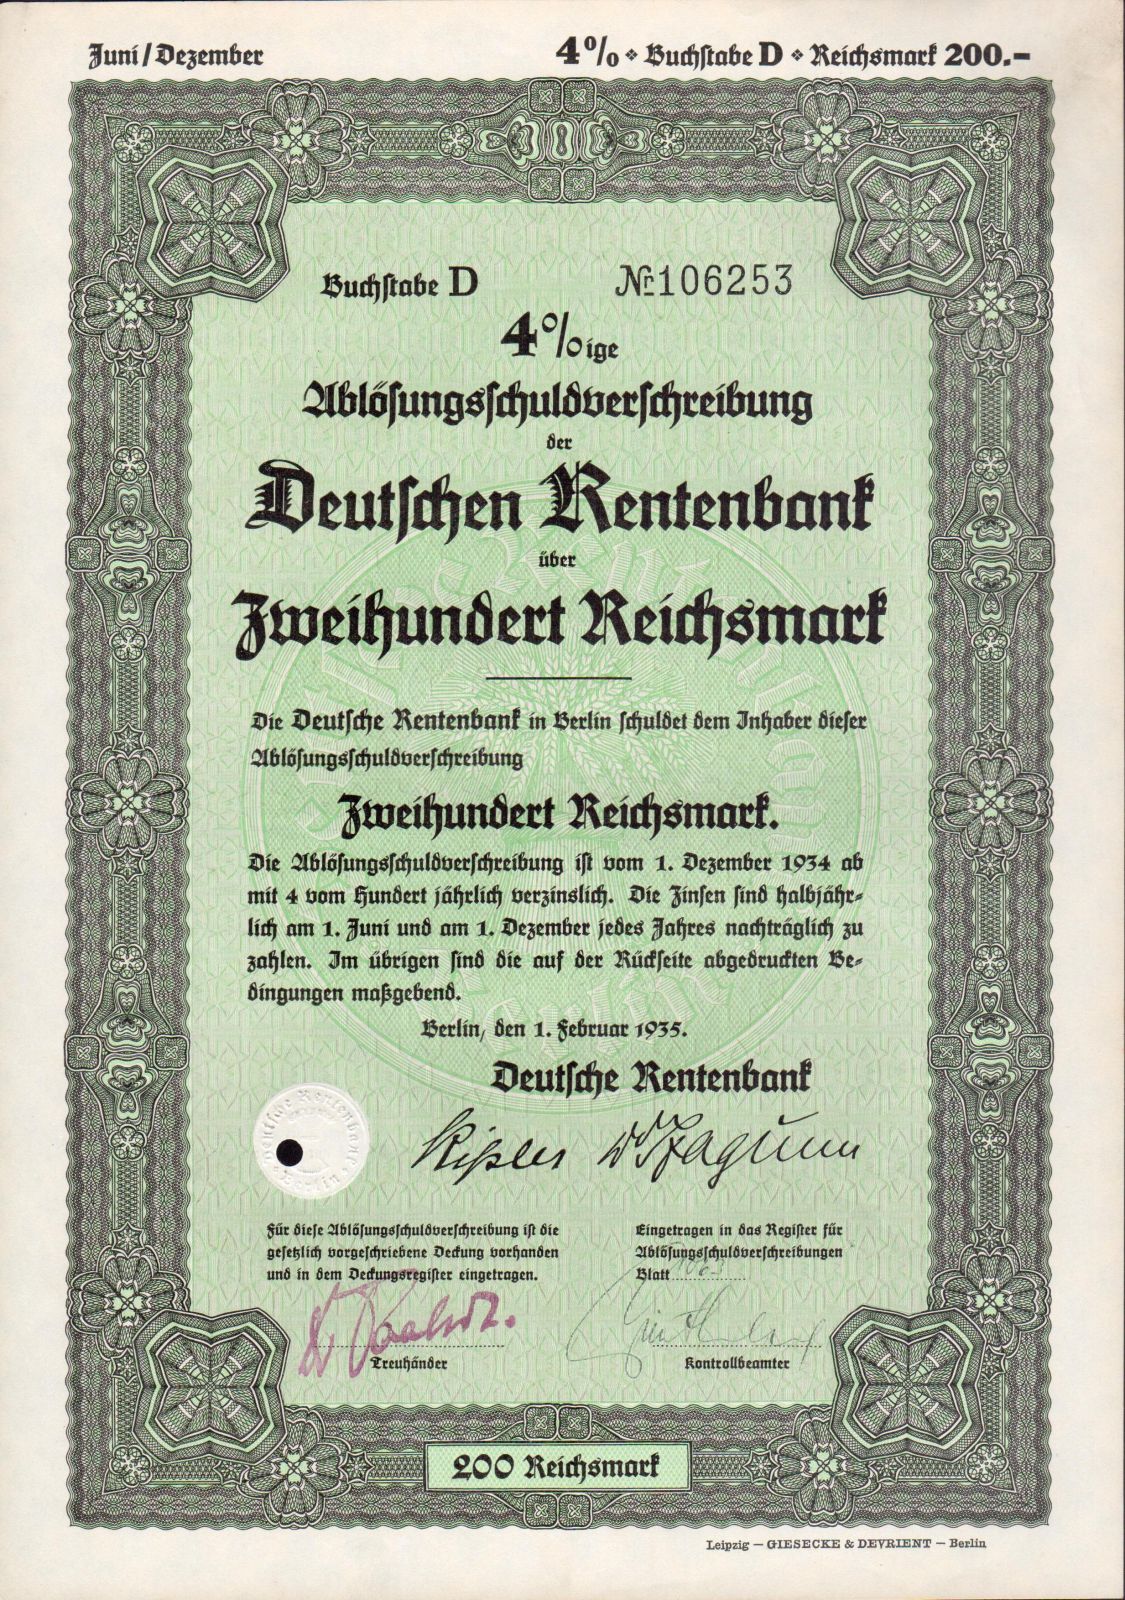 Dluhopis Deutschen Rentenbank, Berlín/1935/, 200 Reichsmark, 4%%, formát A4